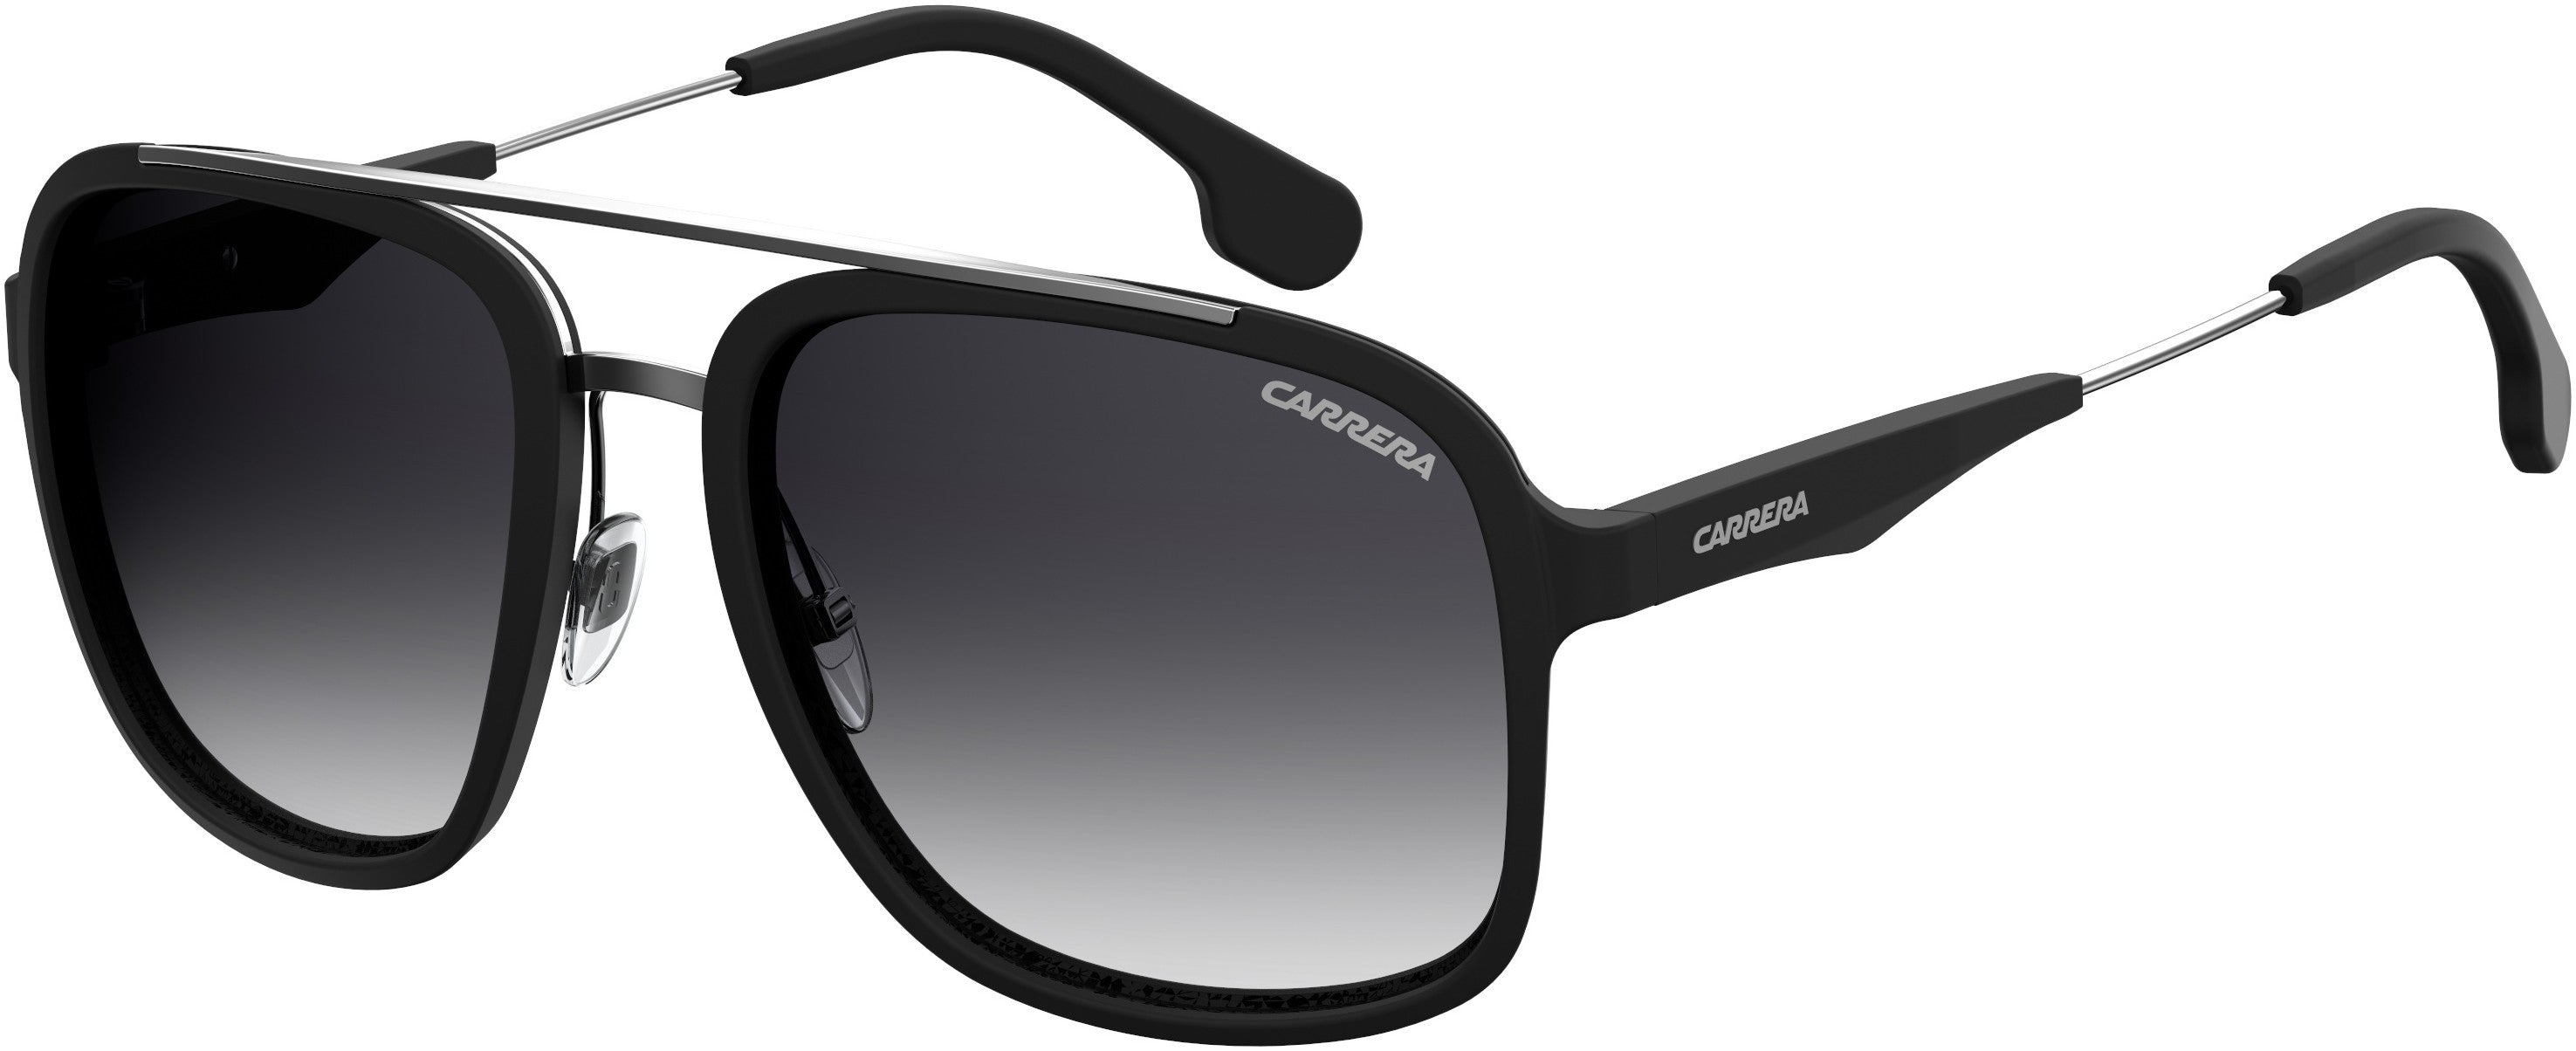  Carrera 133/S Square Sunglasses 0TI7-0TI7  Matte Black Ruthenium (9O Dark Gray Gradient)